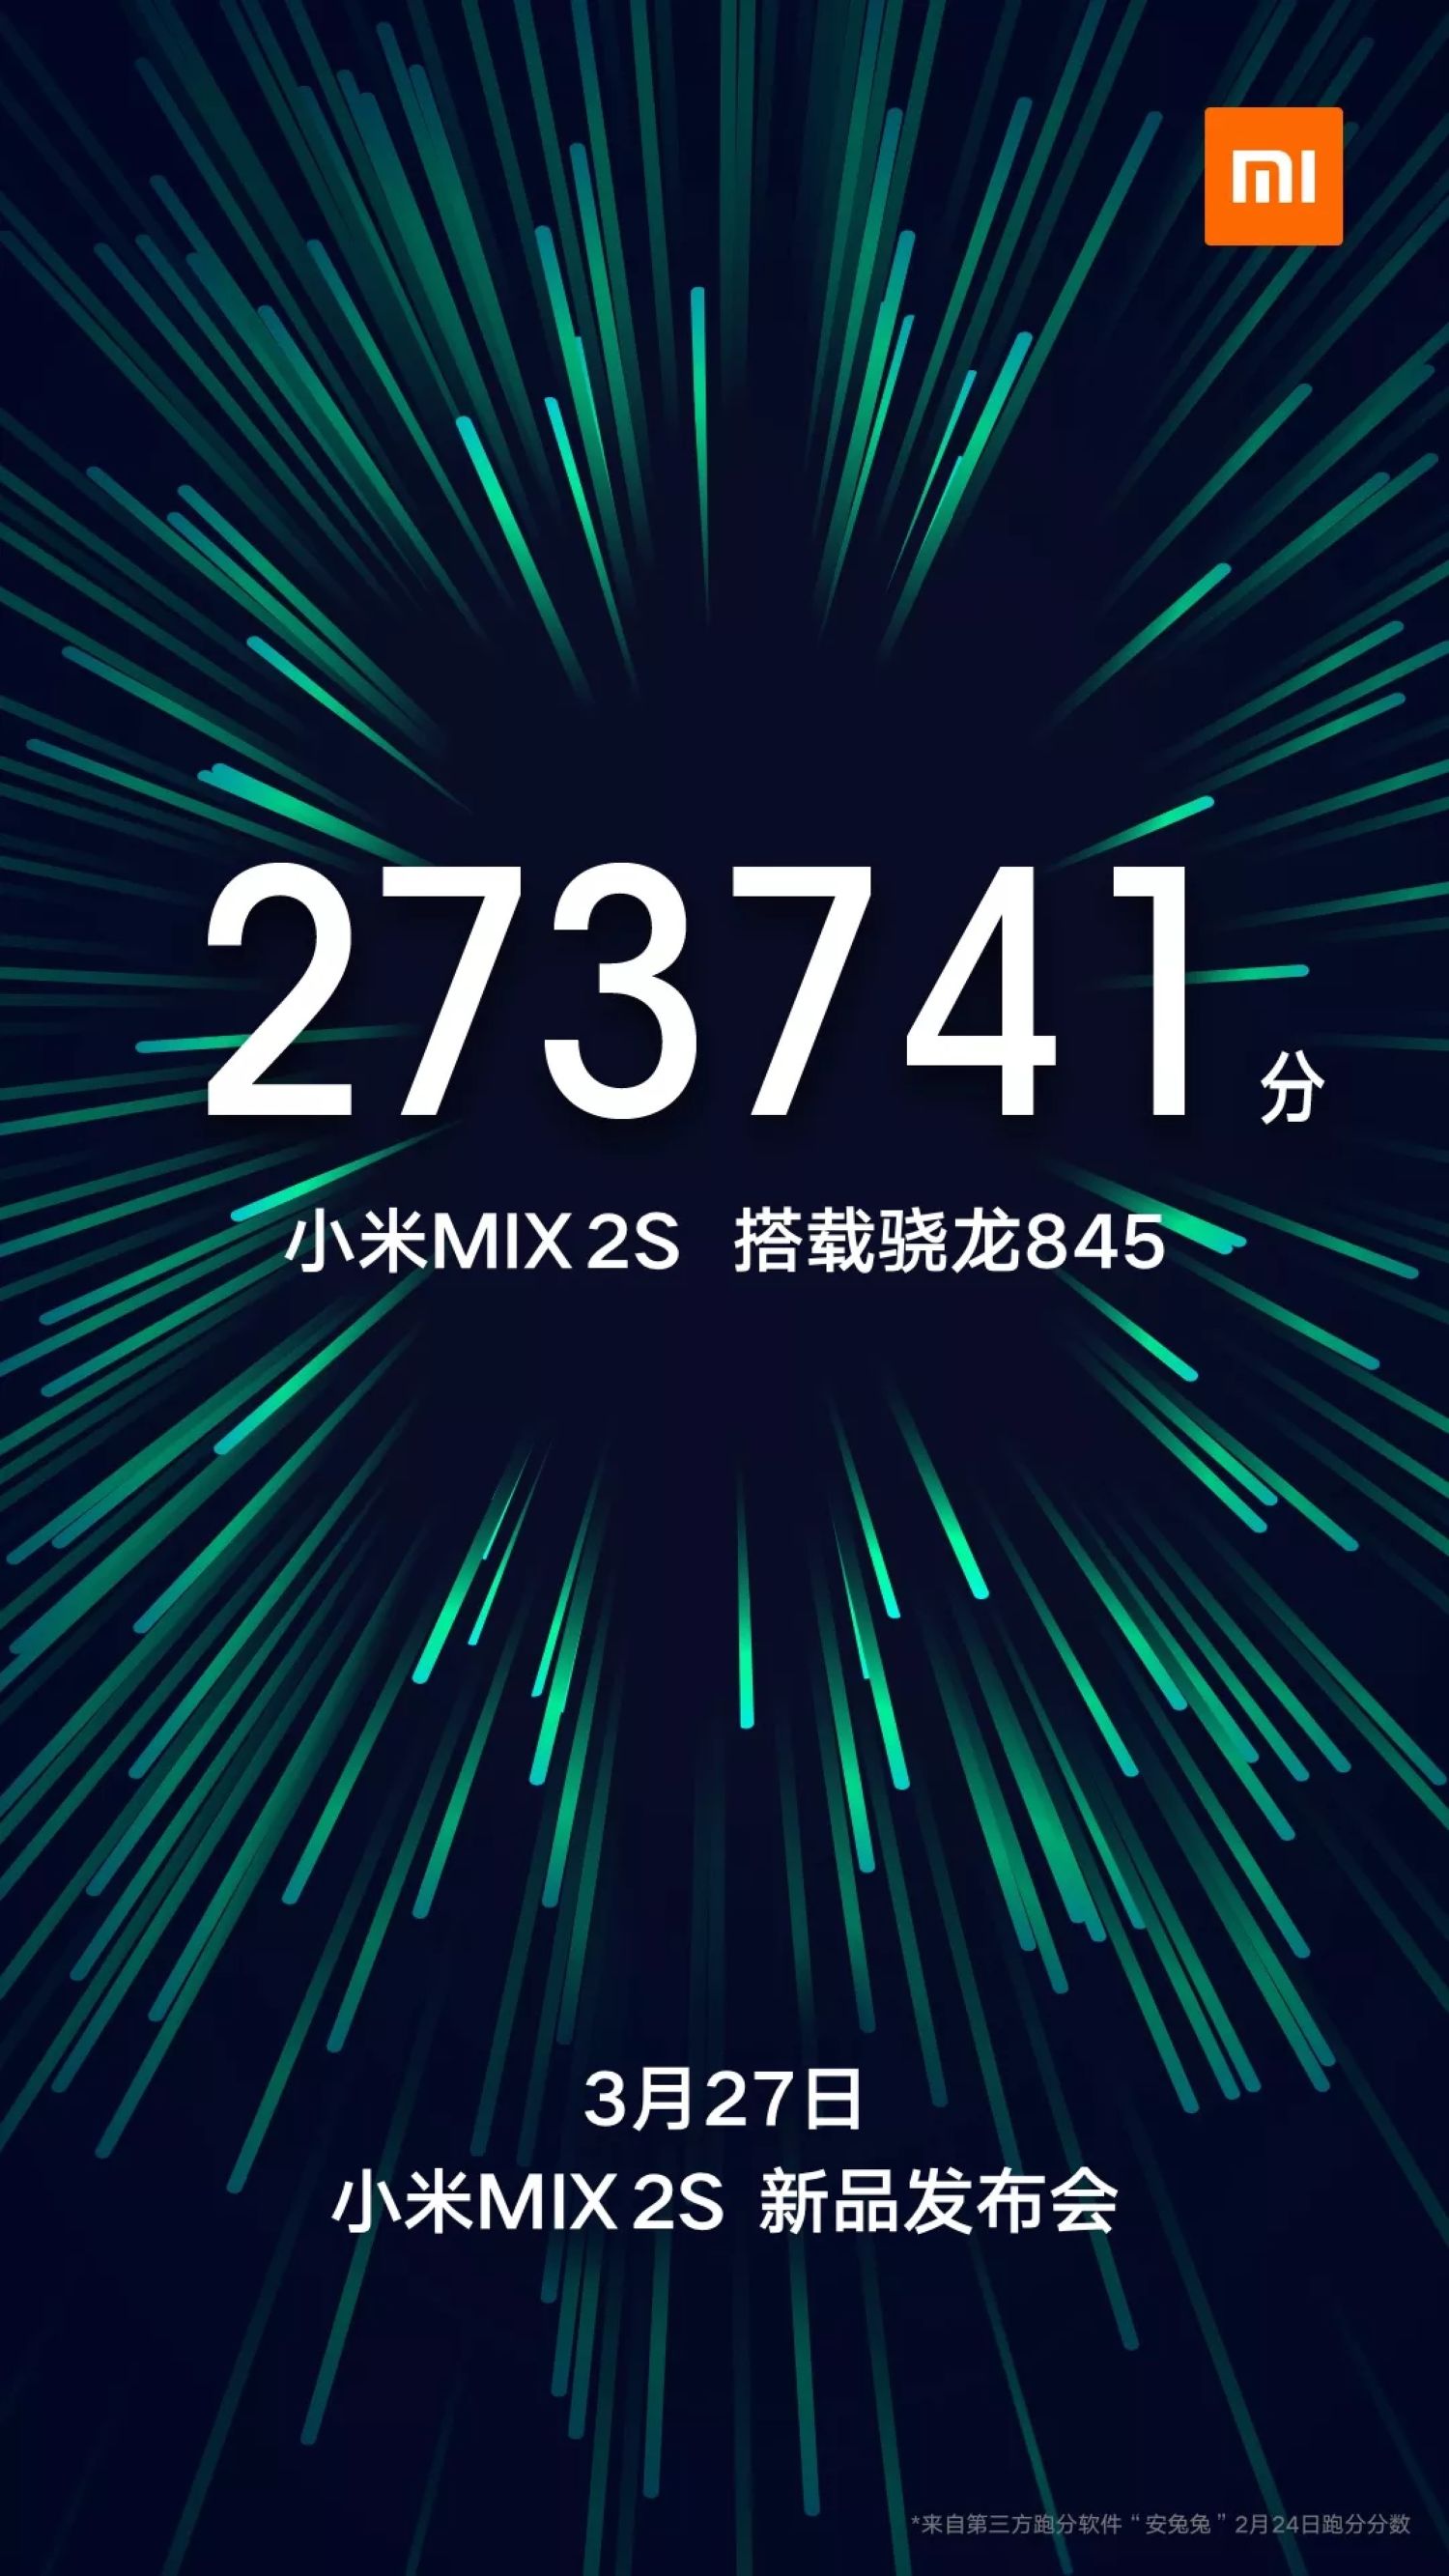 小米MIX 2S 配用骁龙845显卡跑分27万 2019年3月27日公布